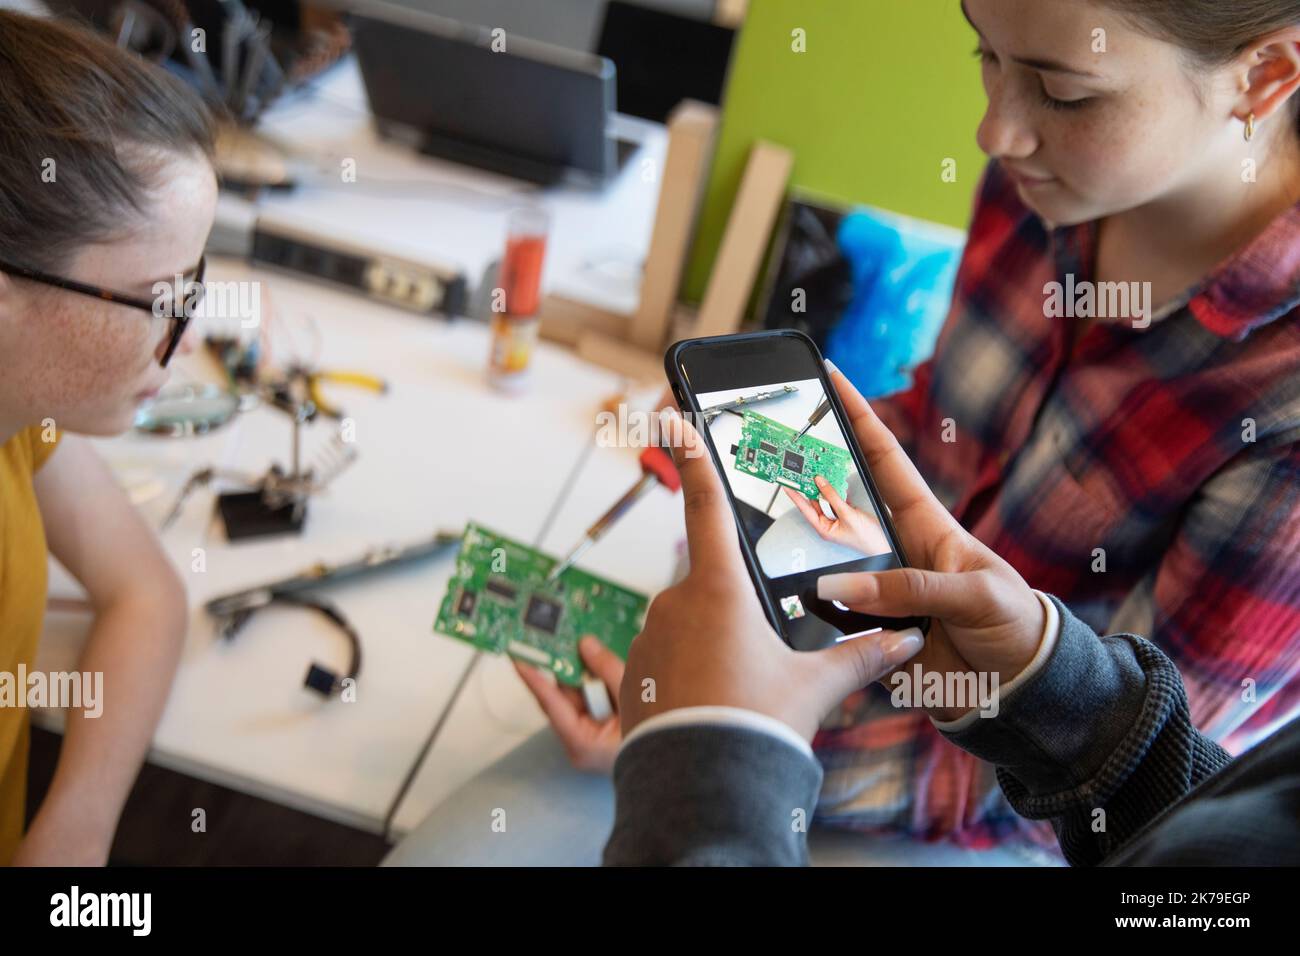 El estudiante está fotografiando una placa de circuito con un smartphone en clase de tecnología Foto de stock